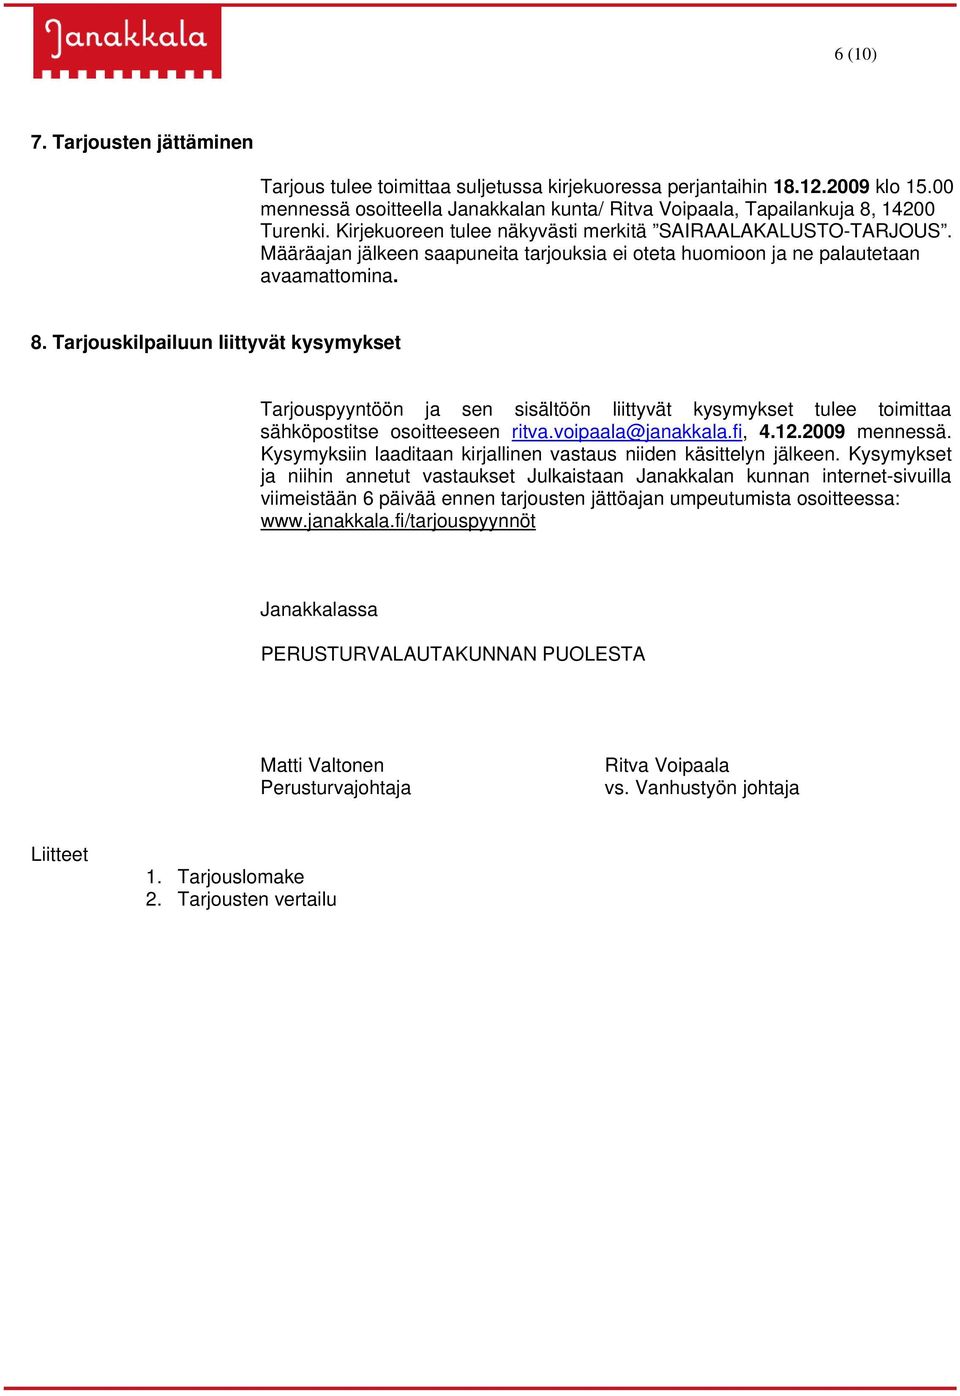 Tarjouskilpailuun liittyvät kysymykset Tarjouspyyntöön ja sen sisältöön liittyvät kysymykset tulee toimittaa sähköpostitse osoitteeseen ritva.voipaala@janakkala.fi, 4.12.2009 mennessä.